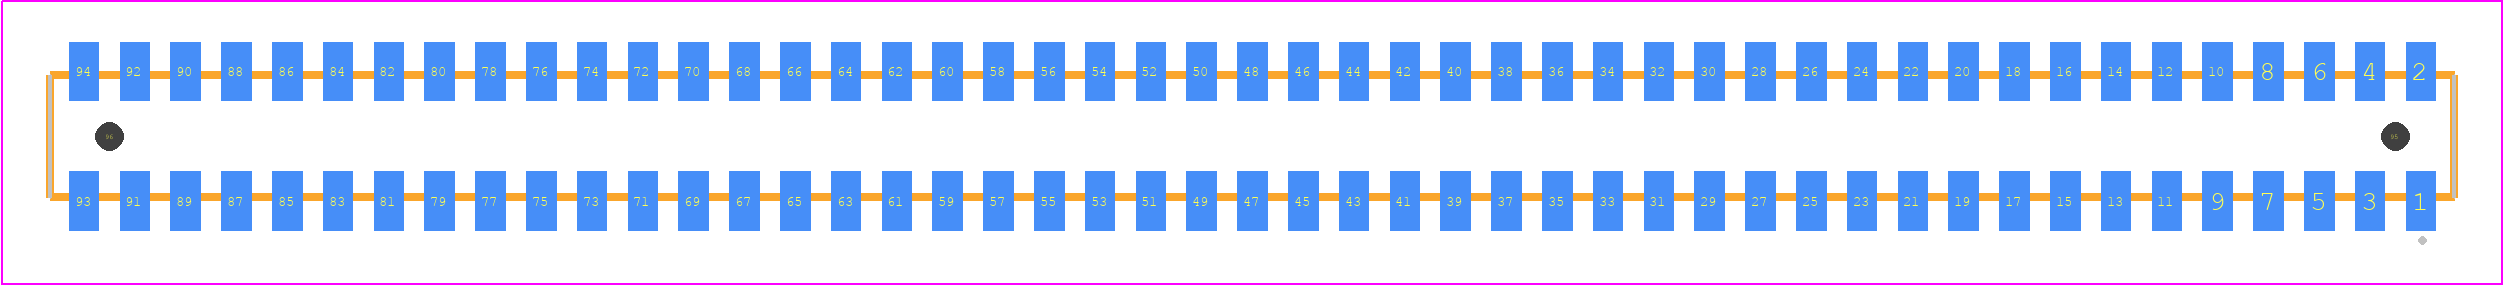 CLP-147-02-G-D-A-TR - SAMTEC PCB footprint - Other - Other - CLP-147-02-XXX-D-A-TR